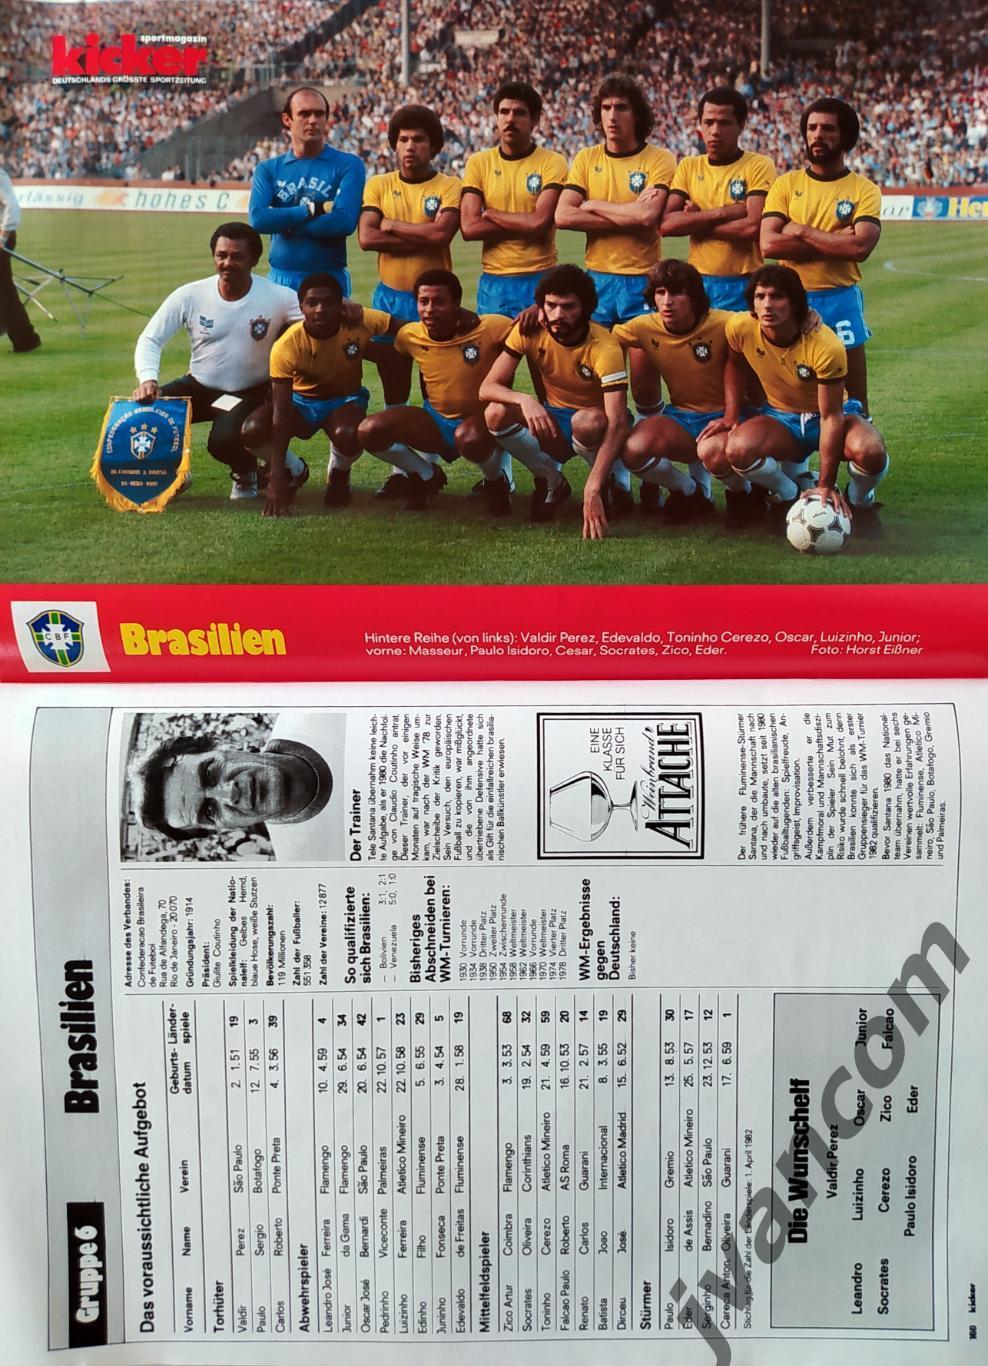 KICKER SONDERHEFT. Чемпионат Мира по футболу 1982 года. Превью участников. 7